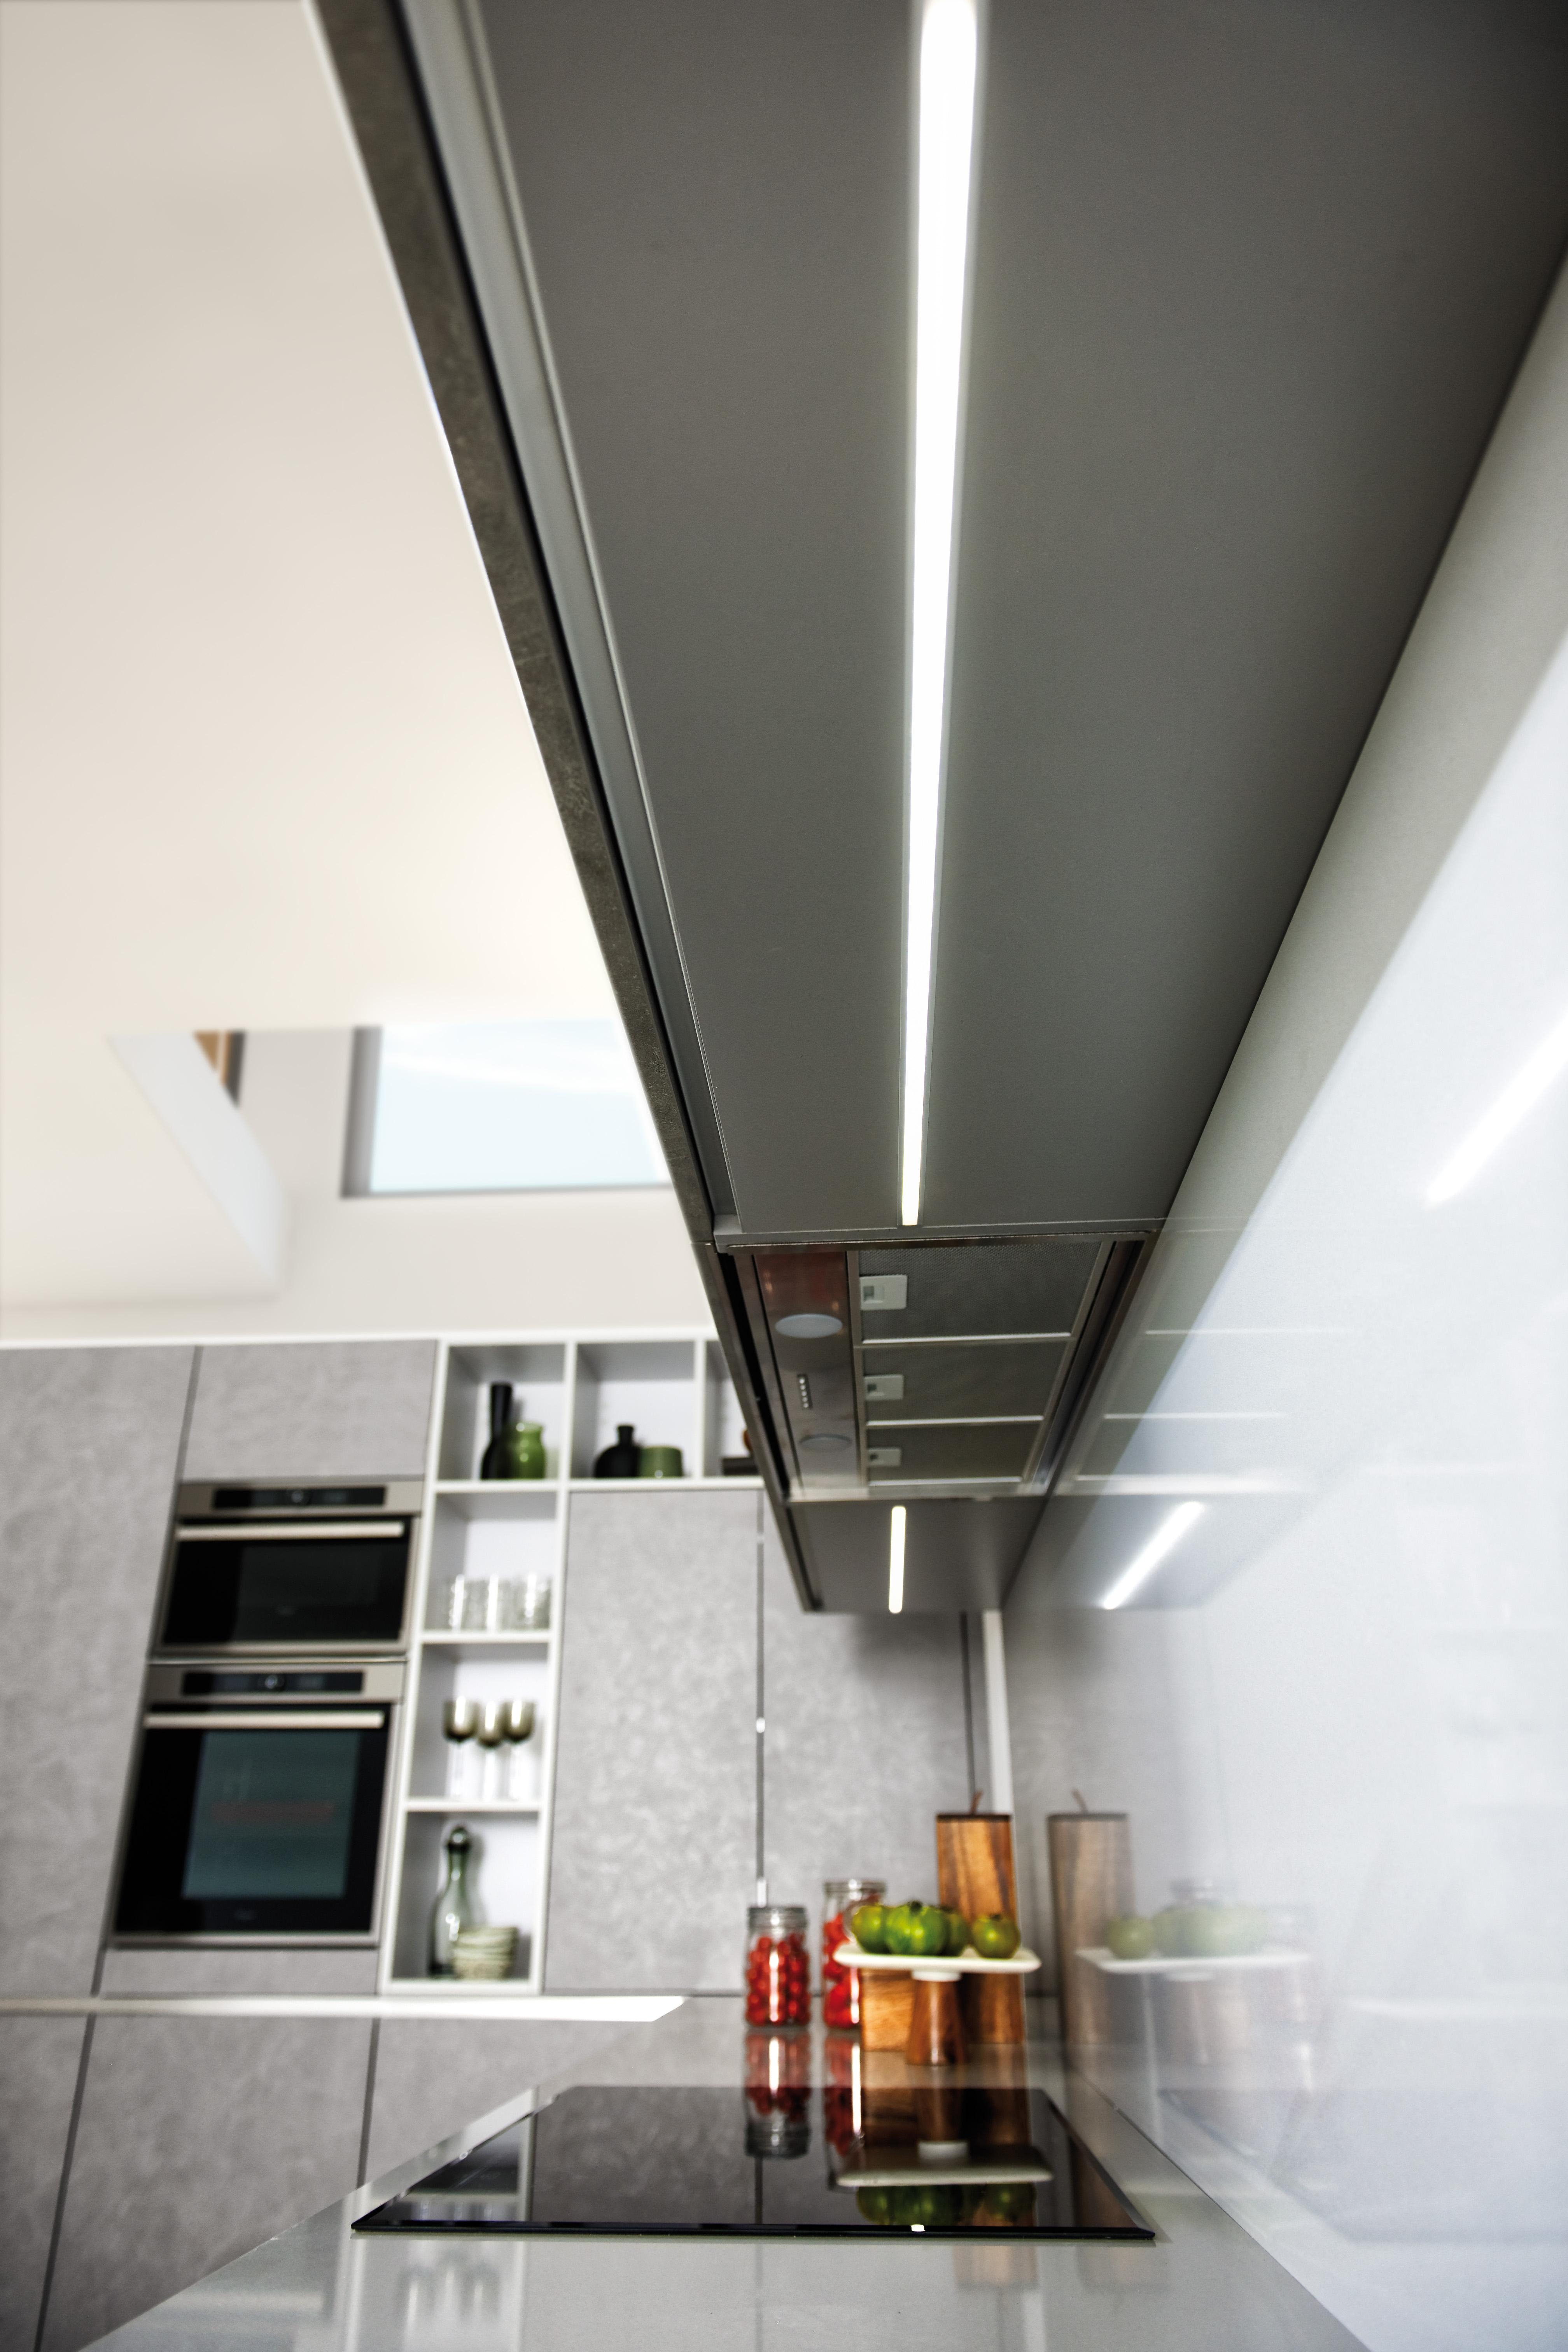 LED-Leisten in der Länge individuell angepasst. #SCHMIDT Küchen
